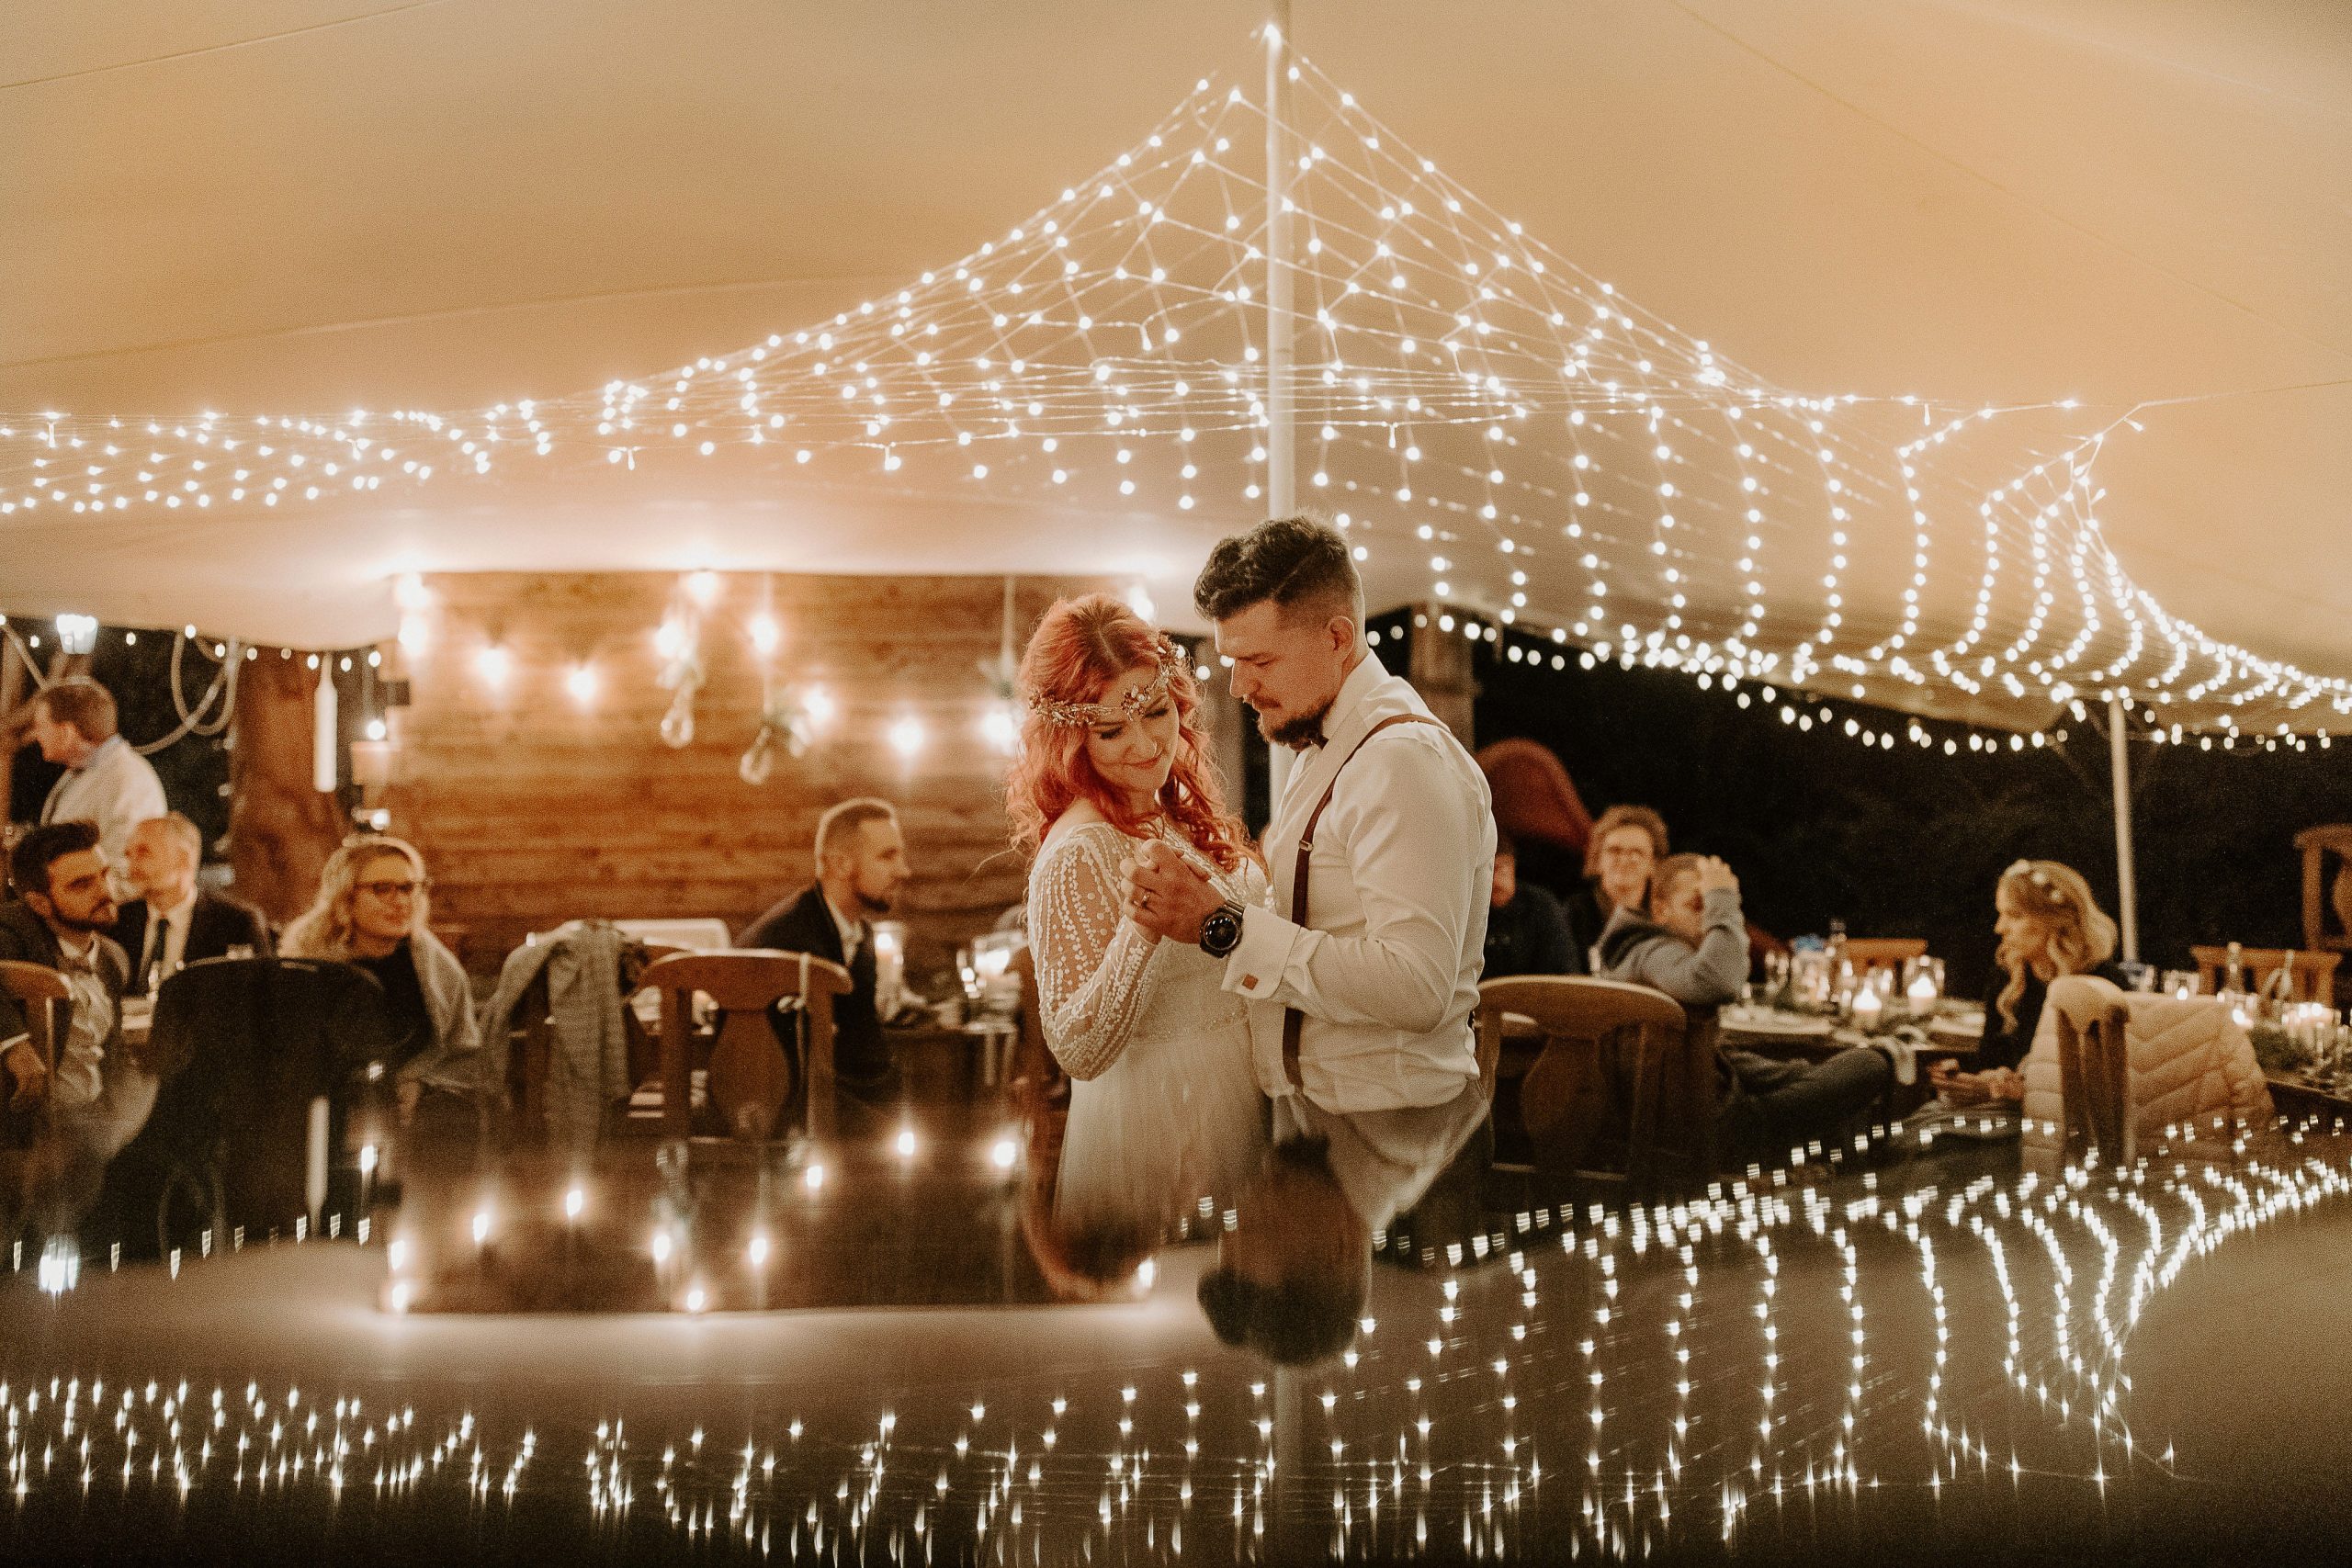 Susan&Sis decor – rozpravkova lesna svadba – blog o prirodnej svadbe – svadba MEMO photo agency – Eri a Matt – nahe prestieranie stola, ihlicie a sisky, svetielka,